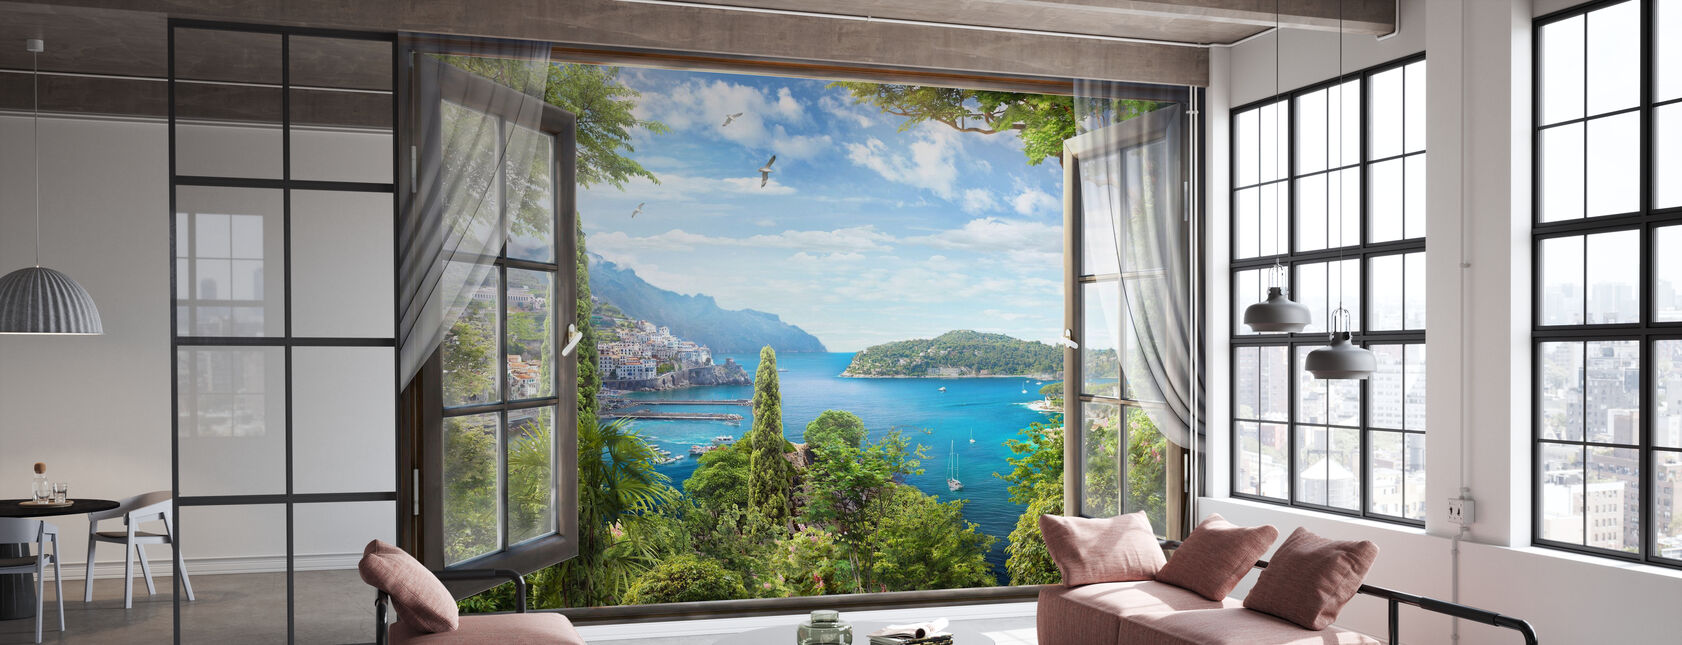 Window Bay View - Wallpaper - Office